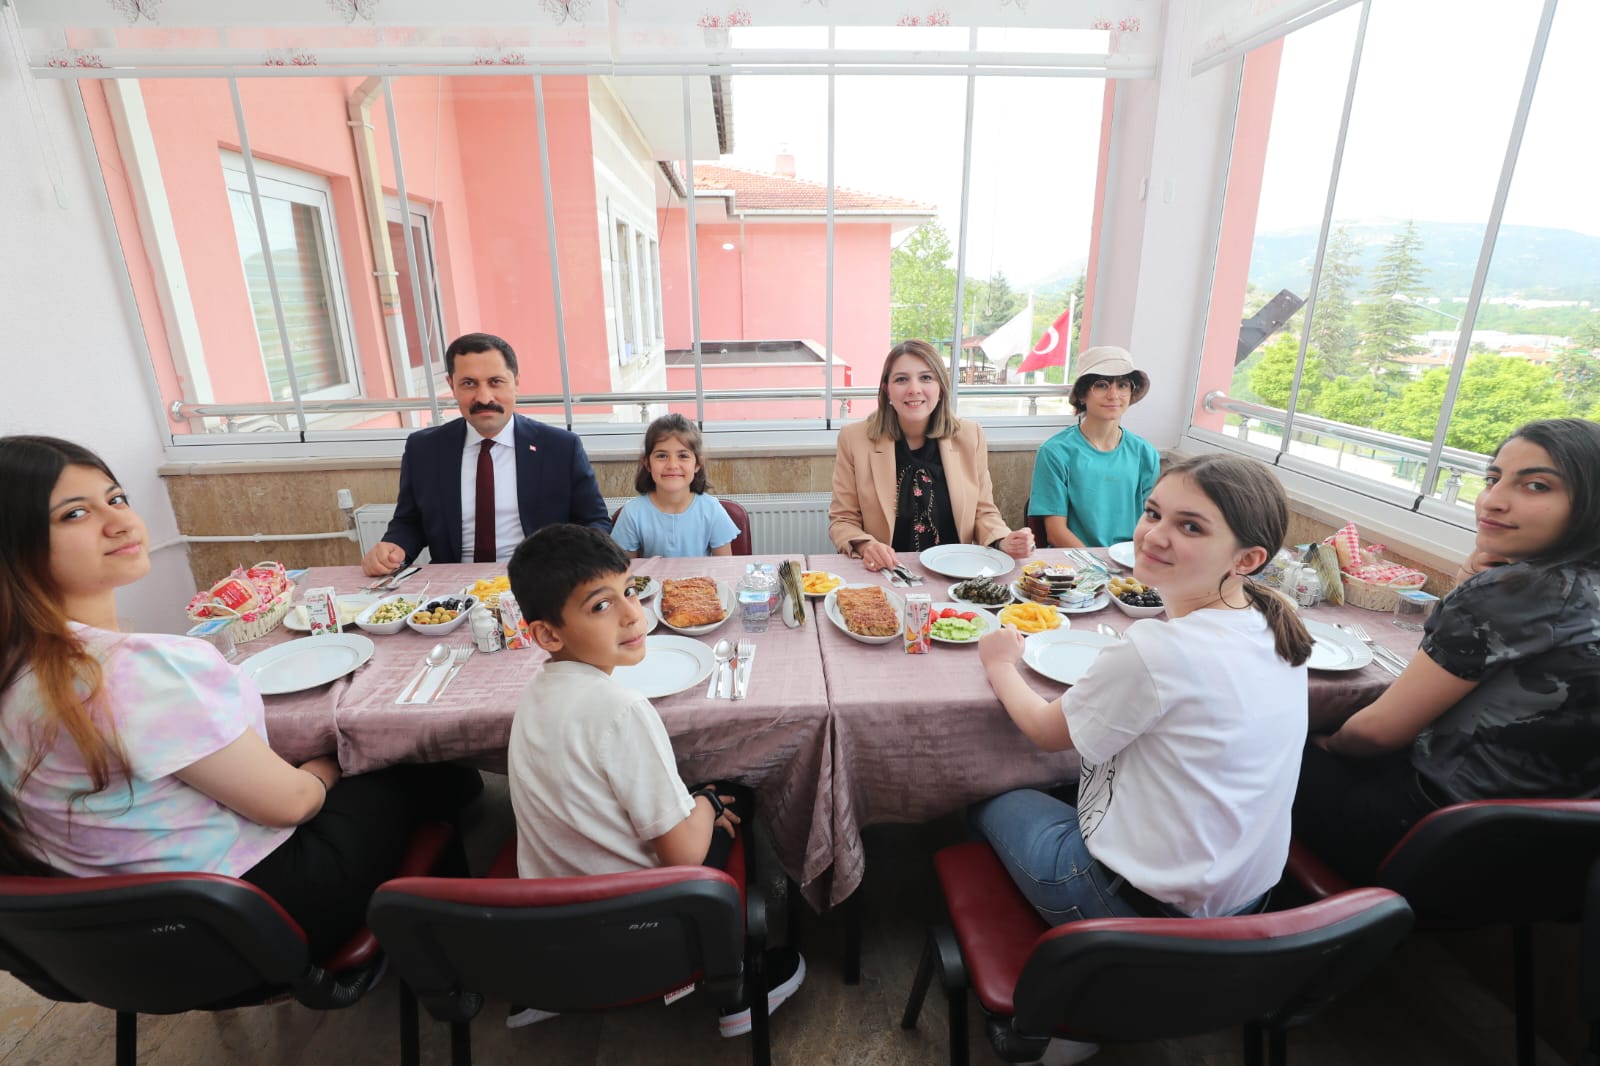 Amasya Valisi Mustafa Masatlı ve Esra Masatlı Hanımefendi Bayramı Şehidimizin Ailesi, Devlet Koruması Altındaki Yavrularımız ve Ulu Çınarlarımızla Karşıladı